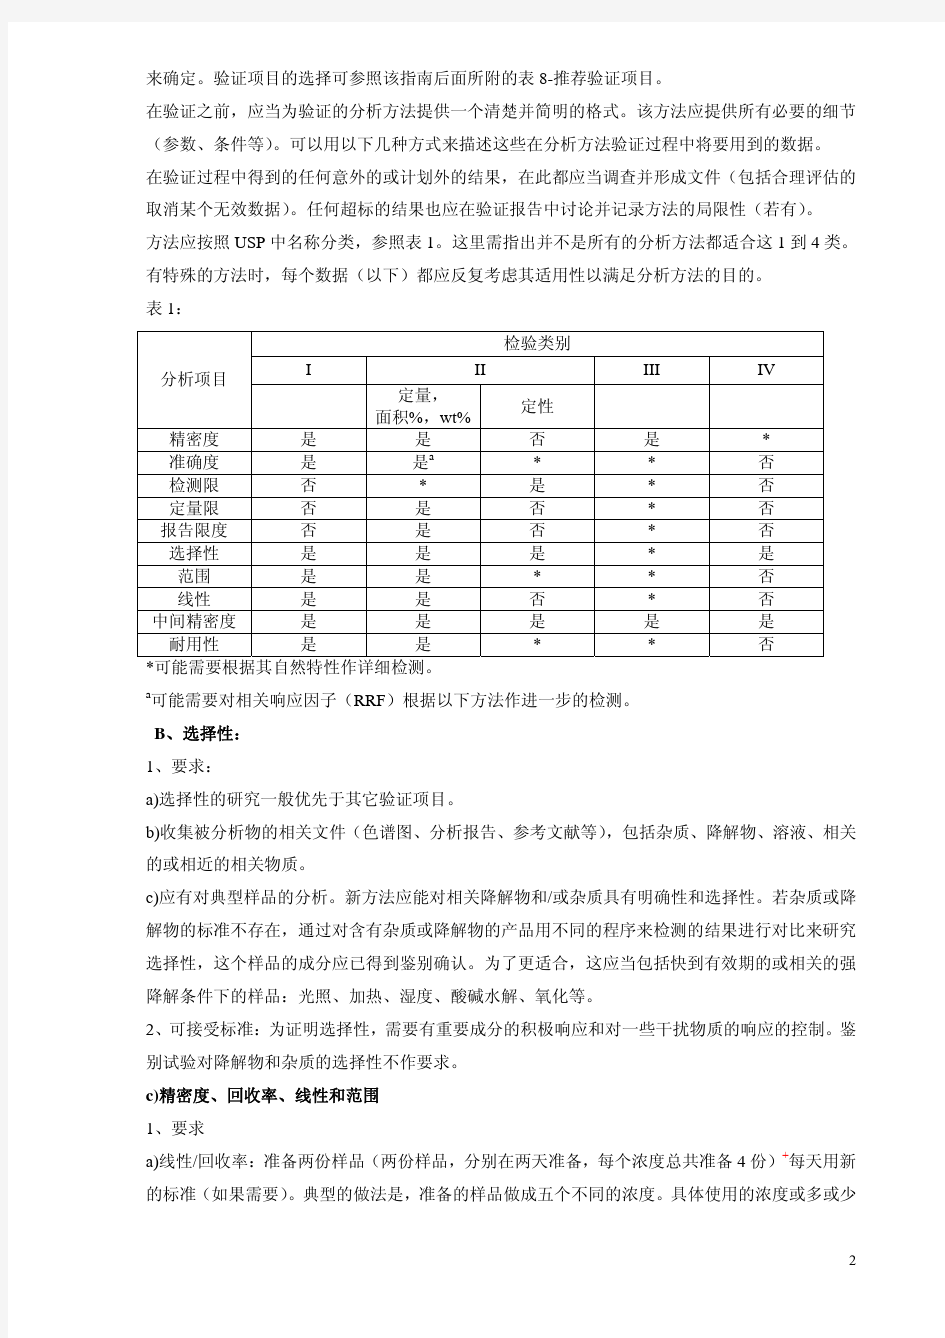 (仅供参考)分析方法验证指南(中文)